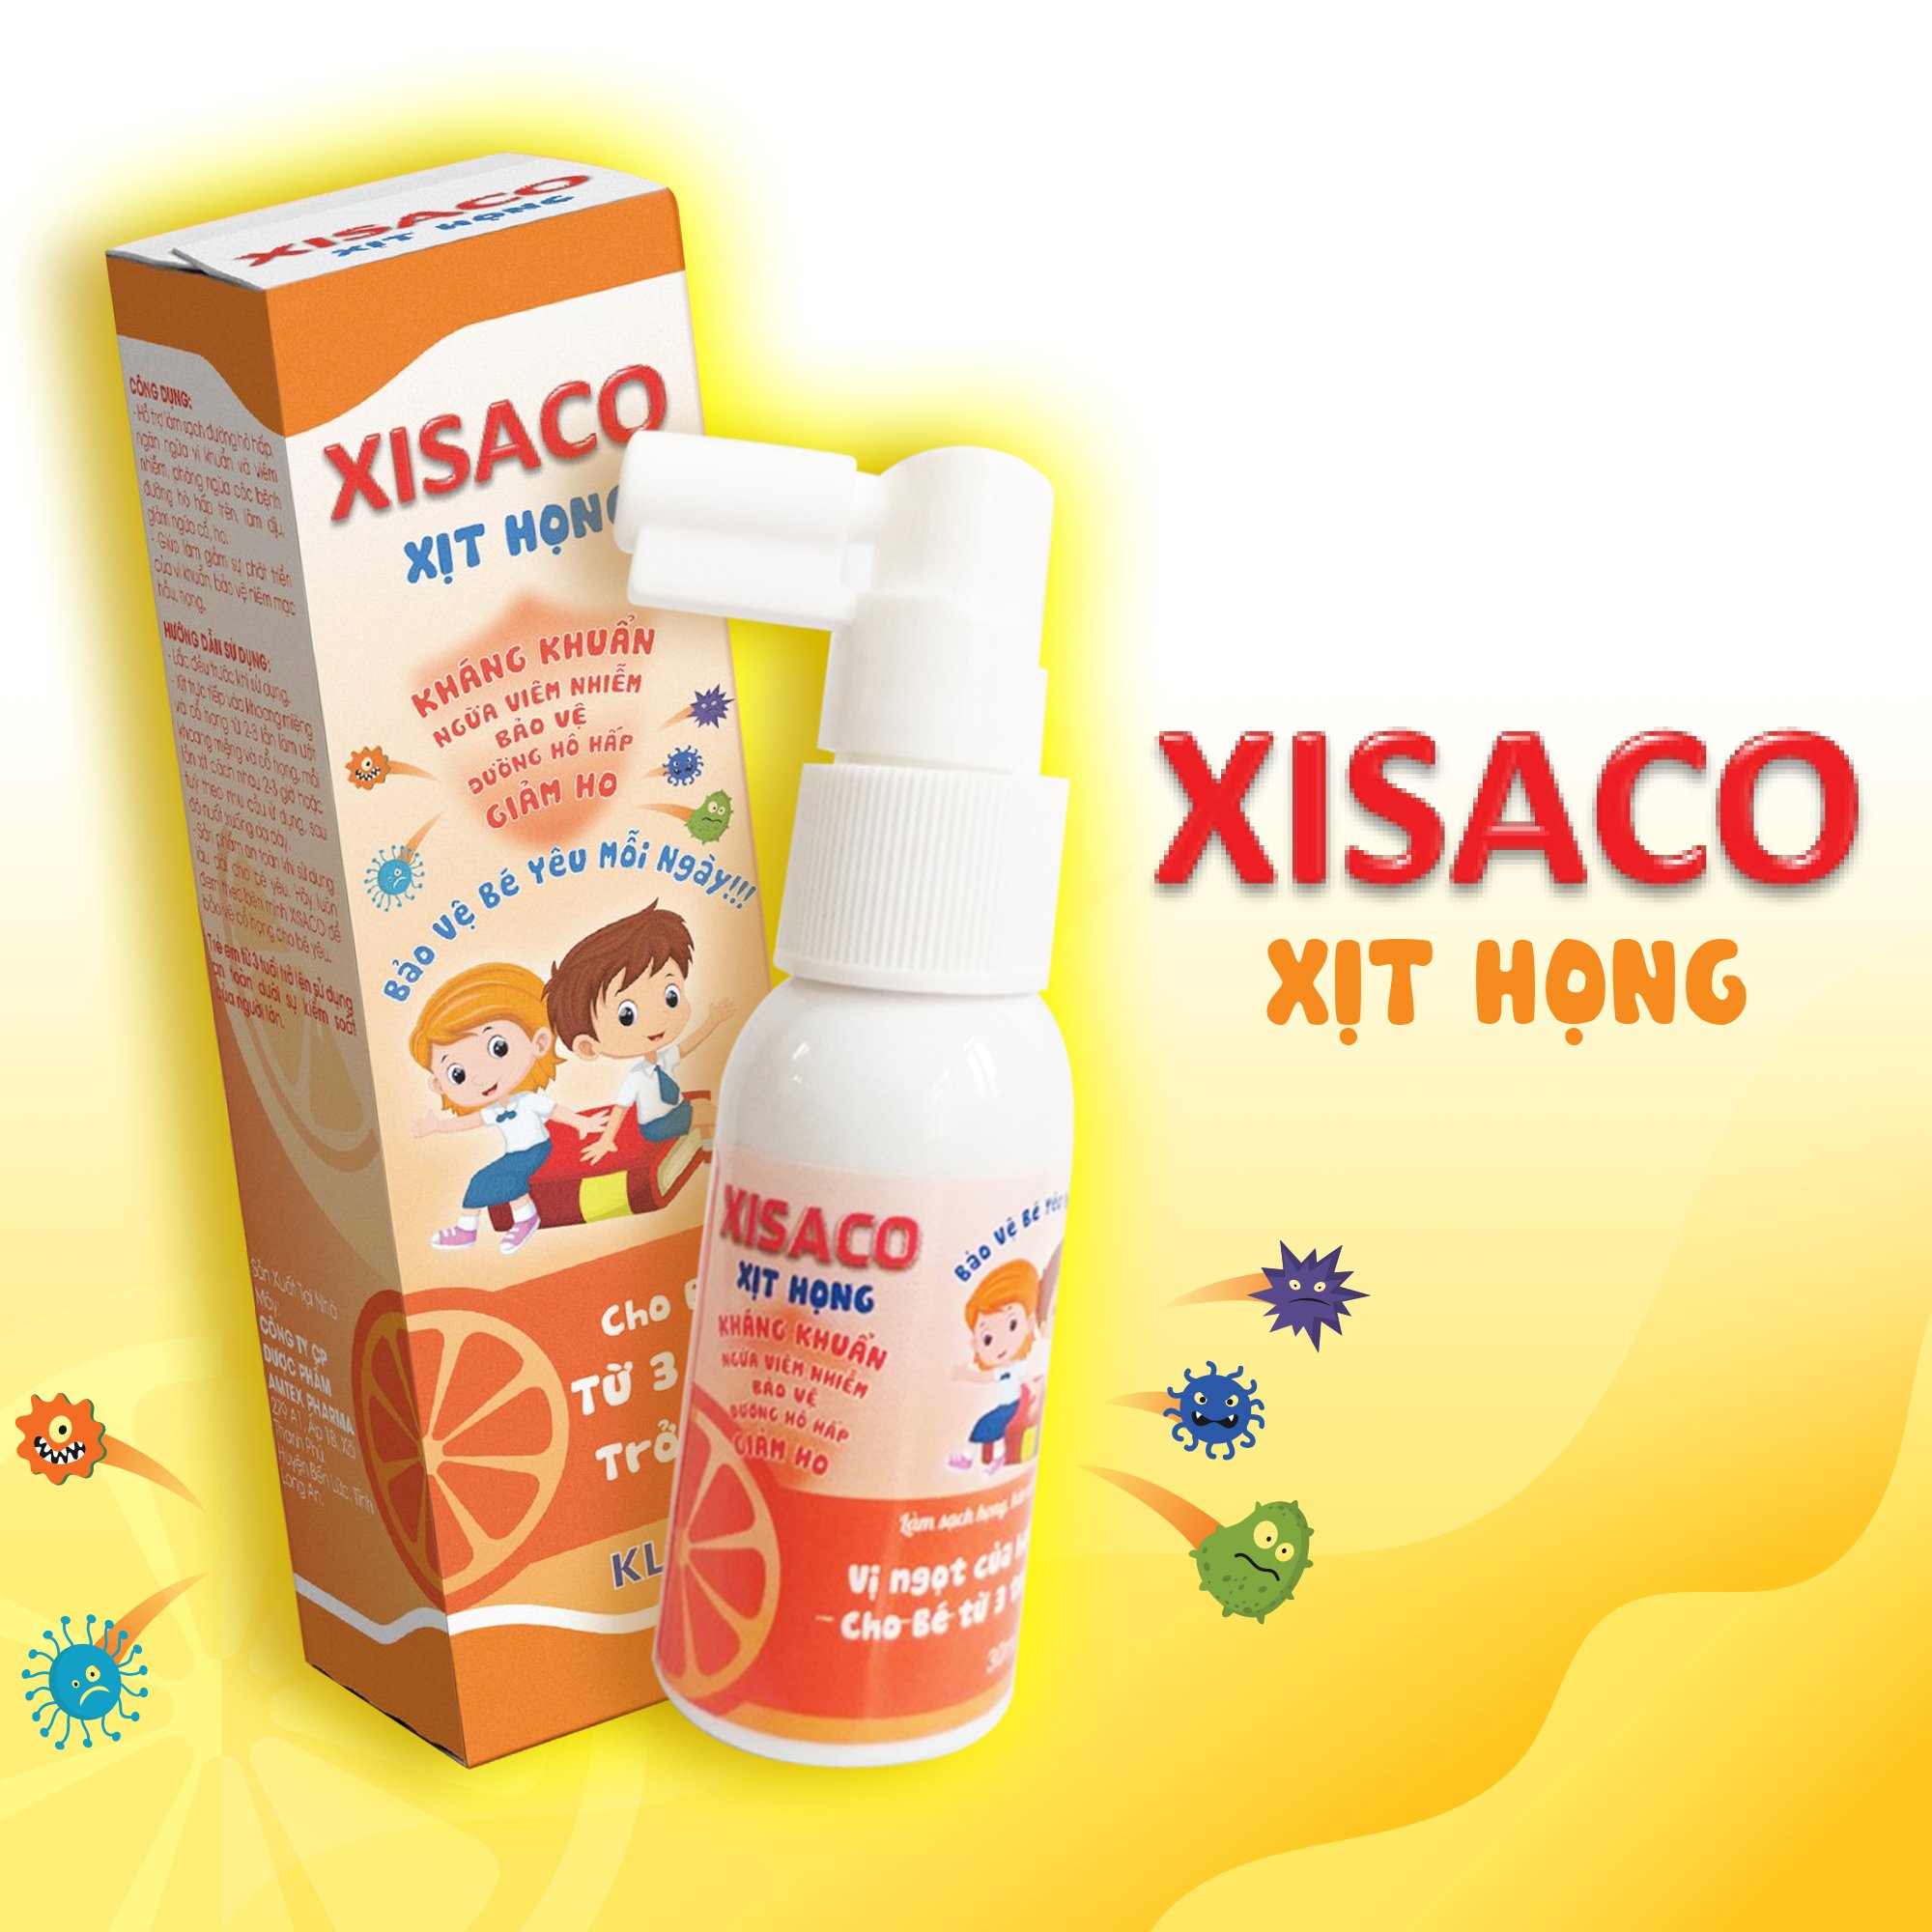 Xịt họng kháng khuẩn XISACO trẻ em, dung dịch xịt họng giảm viêm nhiễm, bảo vệ đường hô hấp cho trẻ , dung tích 300ml  - sản phẩm chính hãng của công ty dược